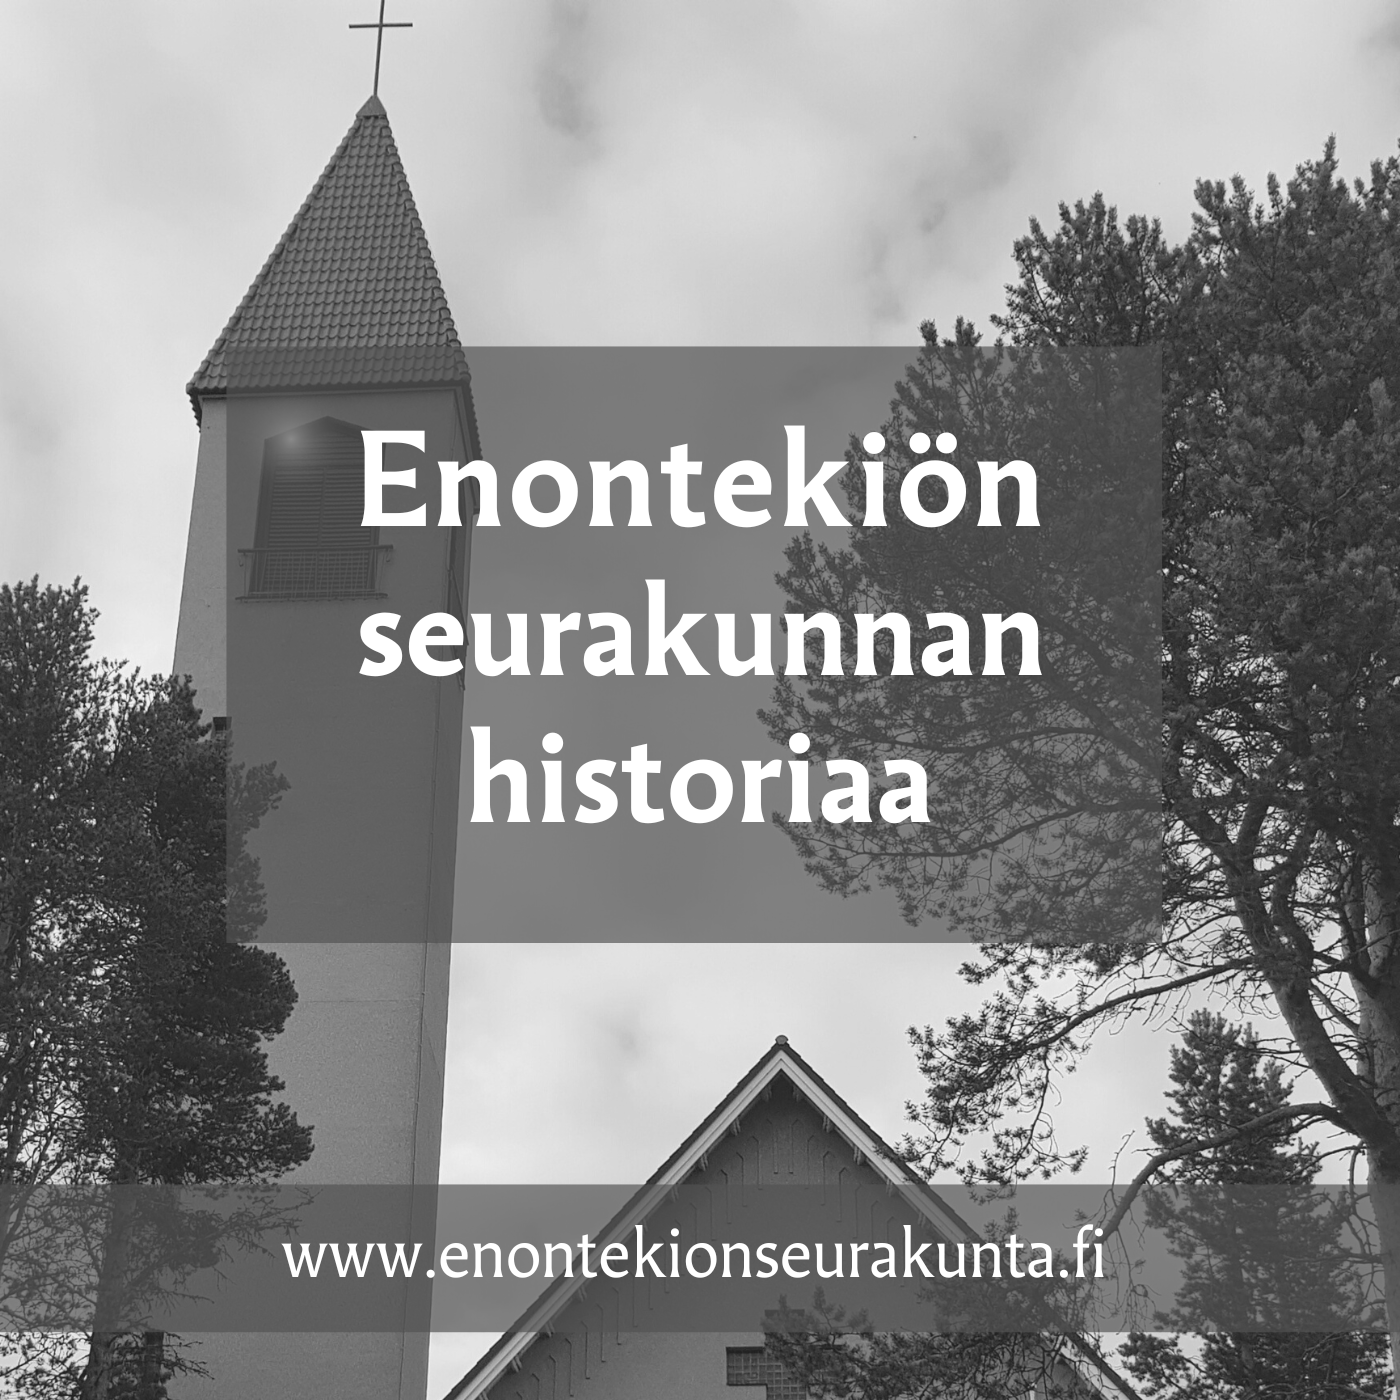 Kirkon kuvan päällä teksti Enontekiön seurakunnan historiaa. Kuva Eija Leppänen.